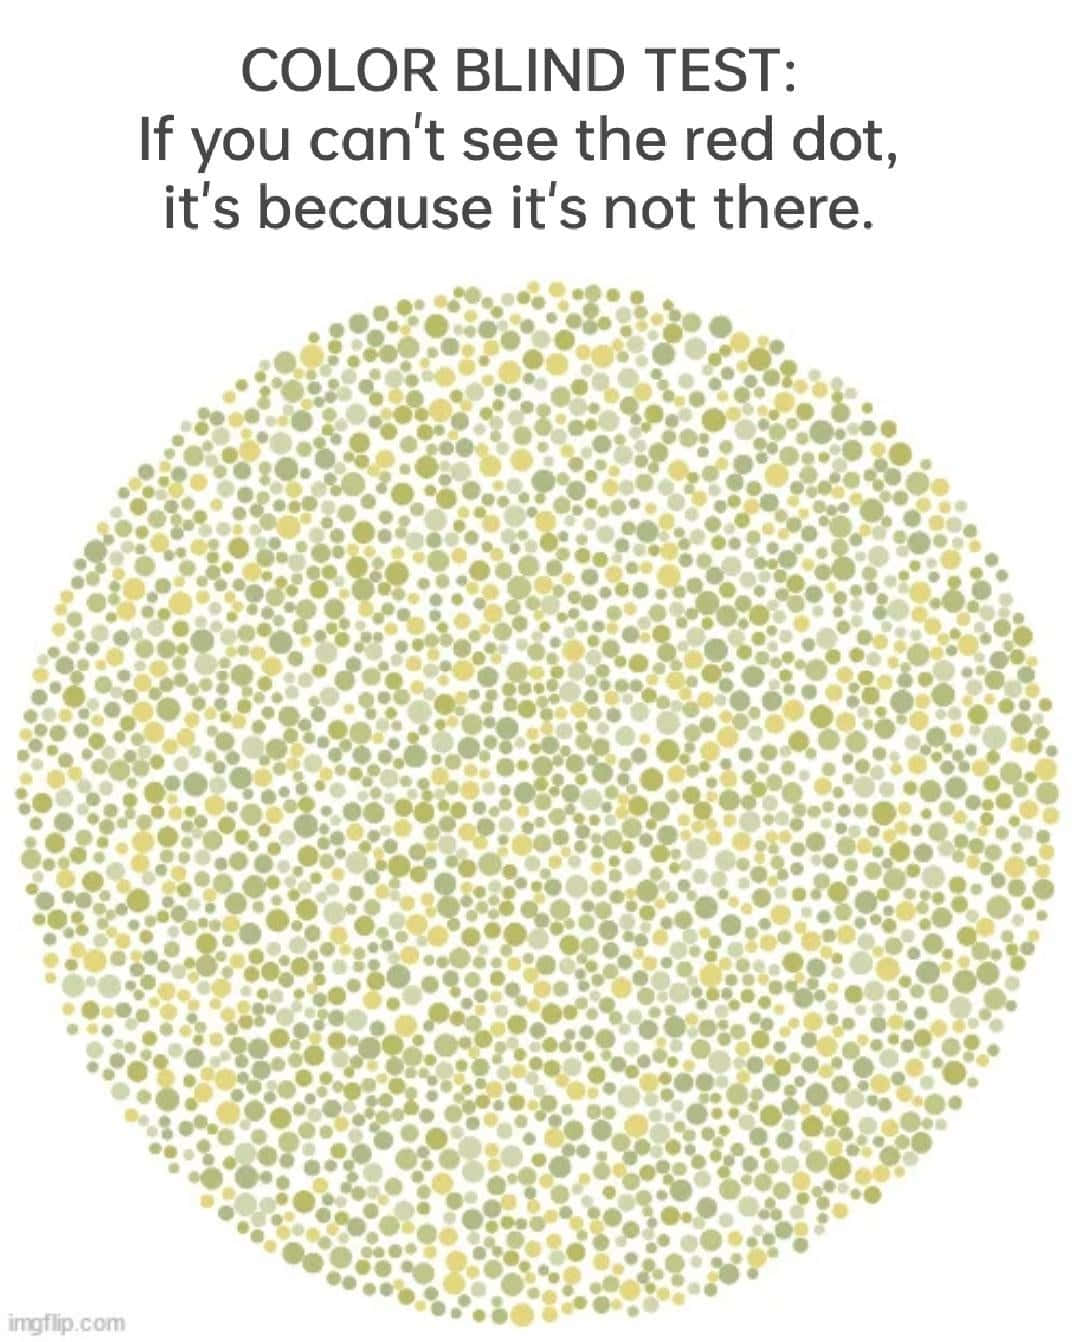 Tag et farveblindhedstest, hvis du ikke kan se det røde prik, fordi det ikke er der.